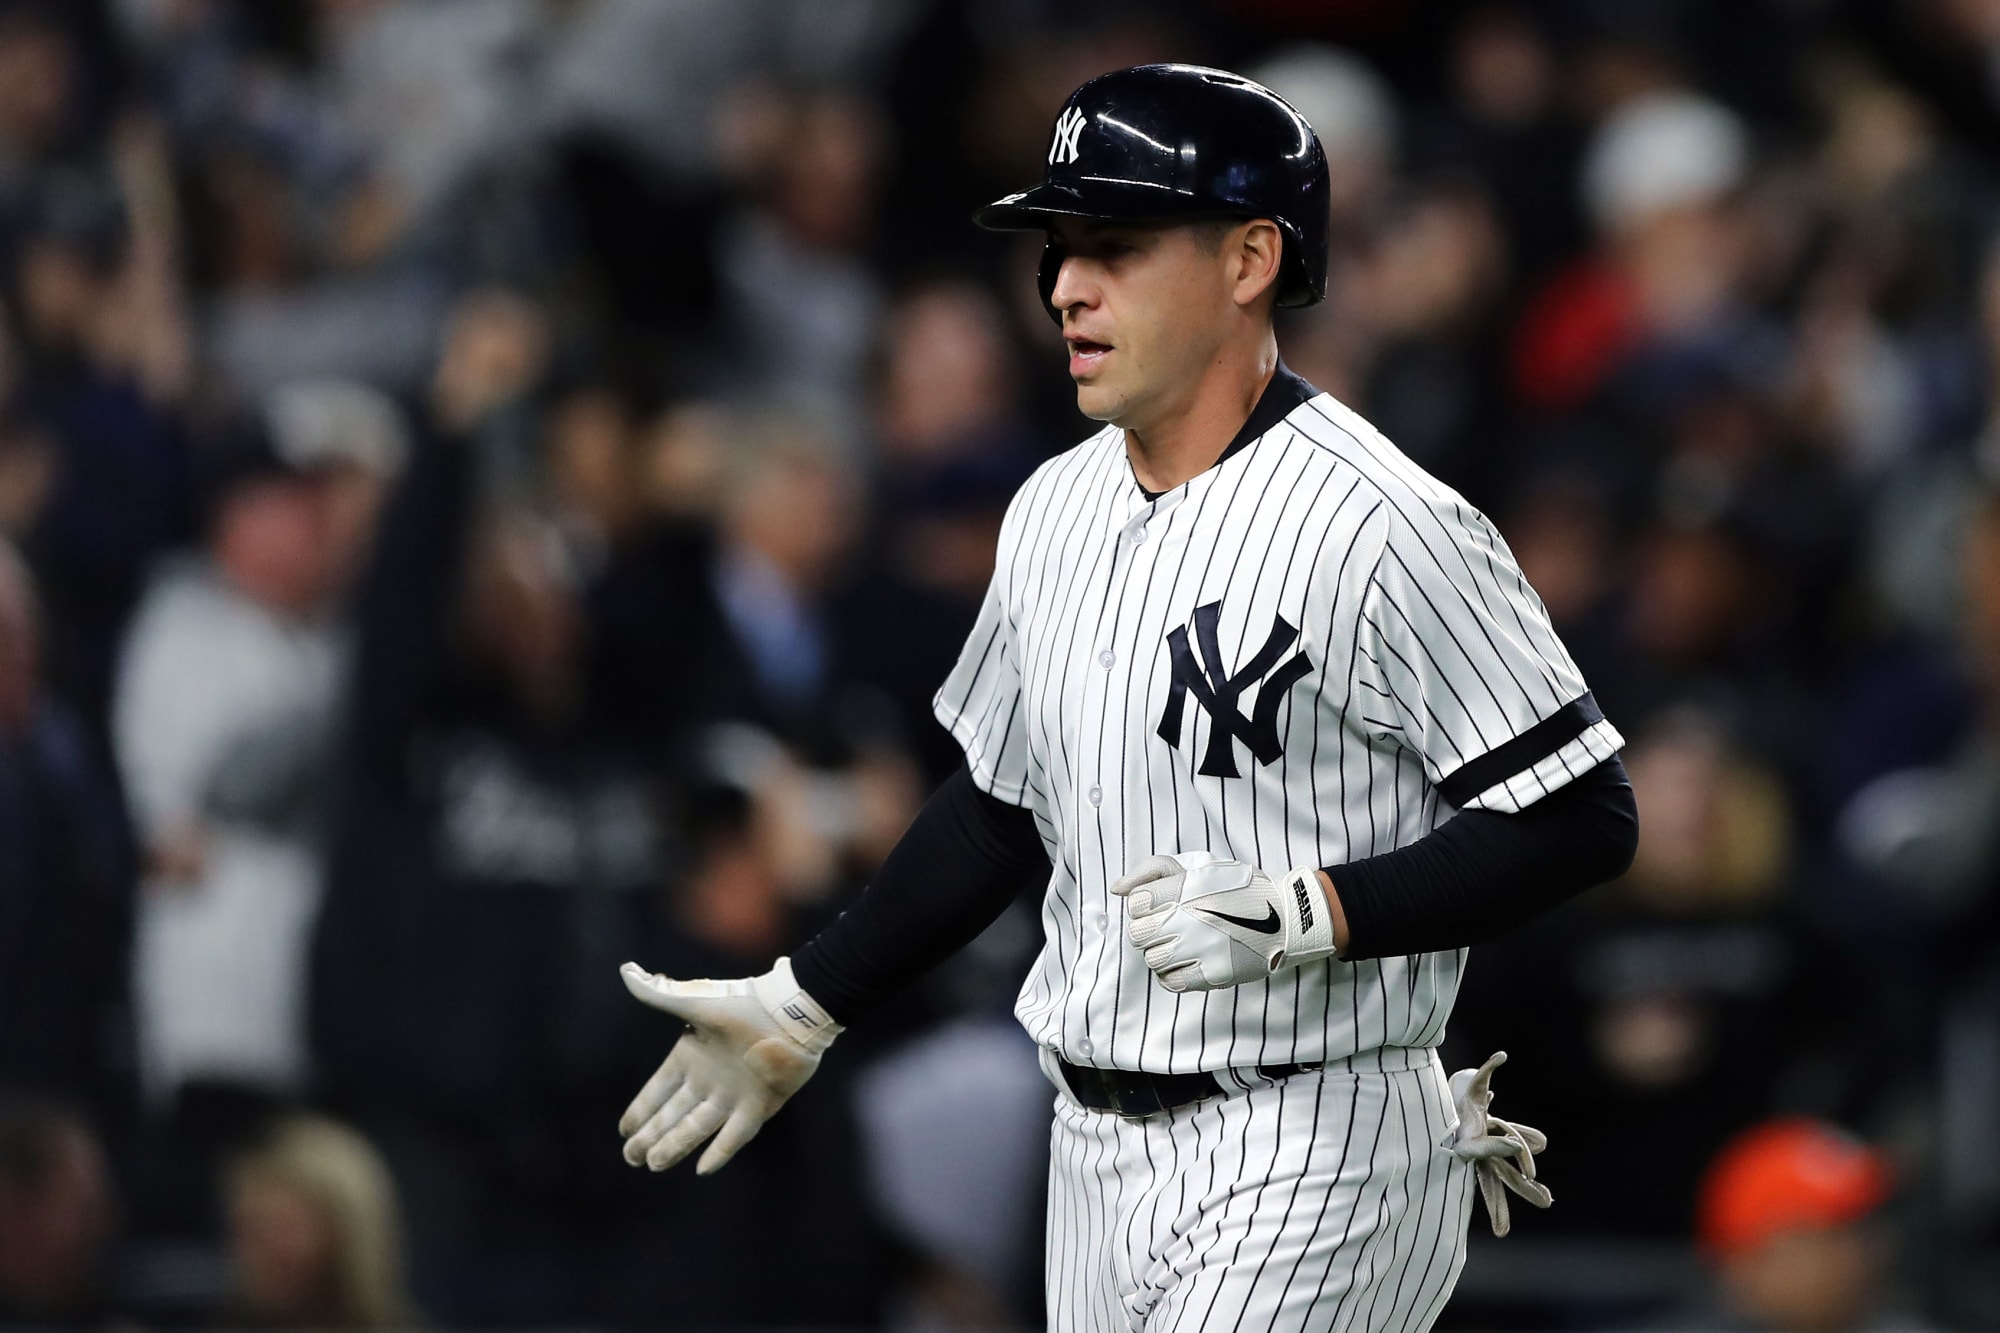 Yankees' Jacoby Ellsbury leaves after getting hit on wrist – Trentonian